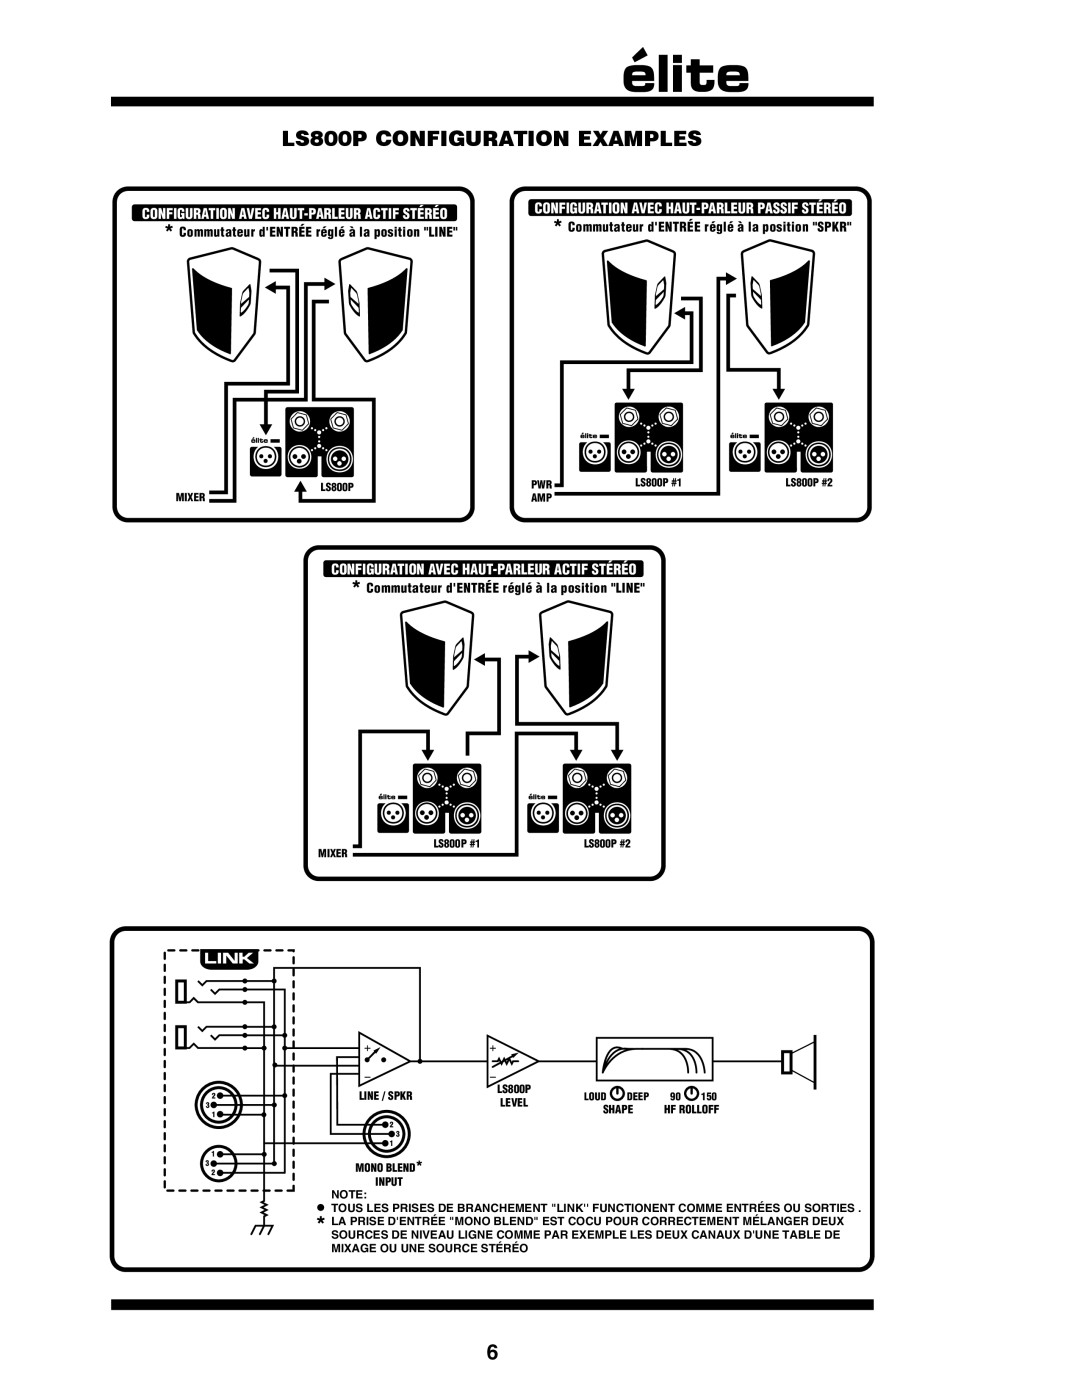 Yorkville Sound owner manual LS800P CONFIGURATION EXAMPLES, Configuration Avec Haut-Parleuractif Stéréo 